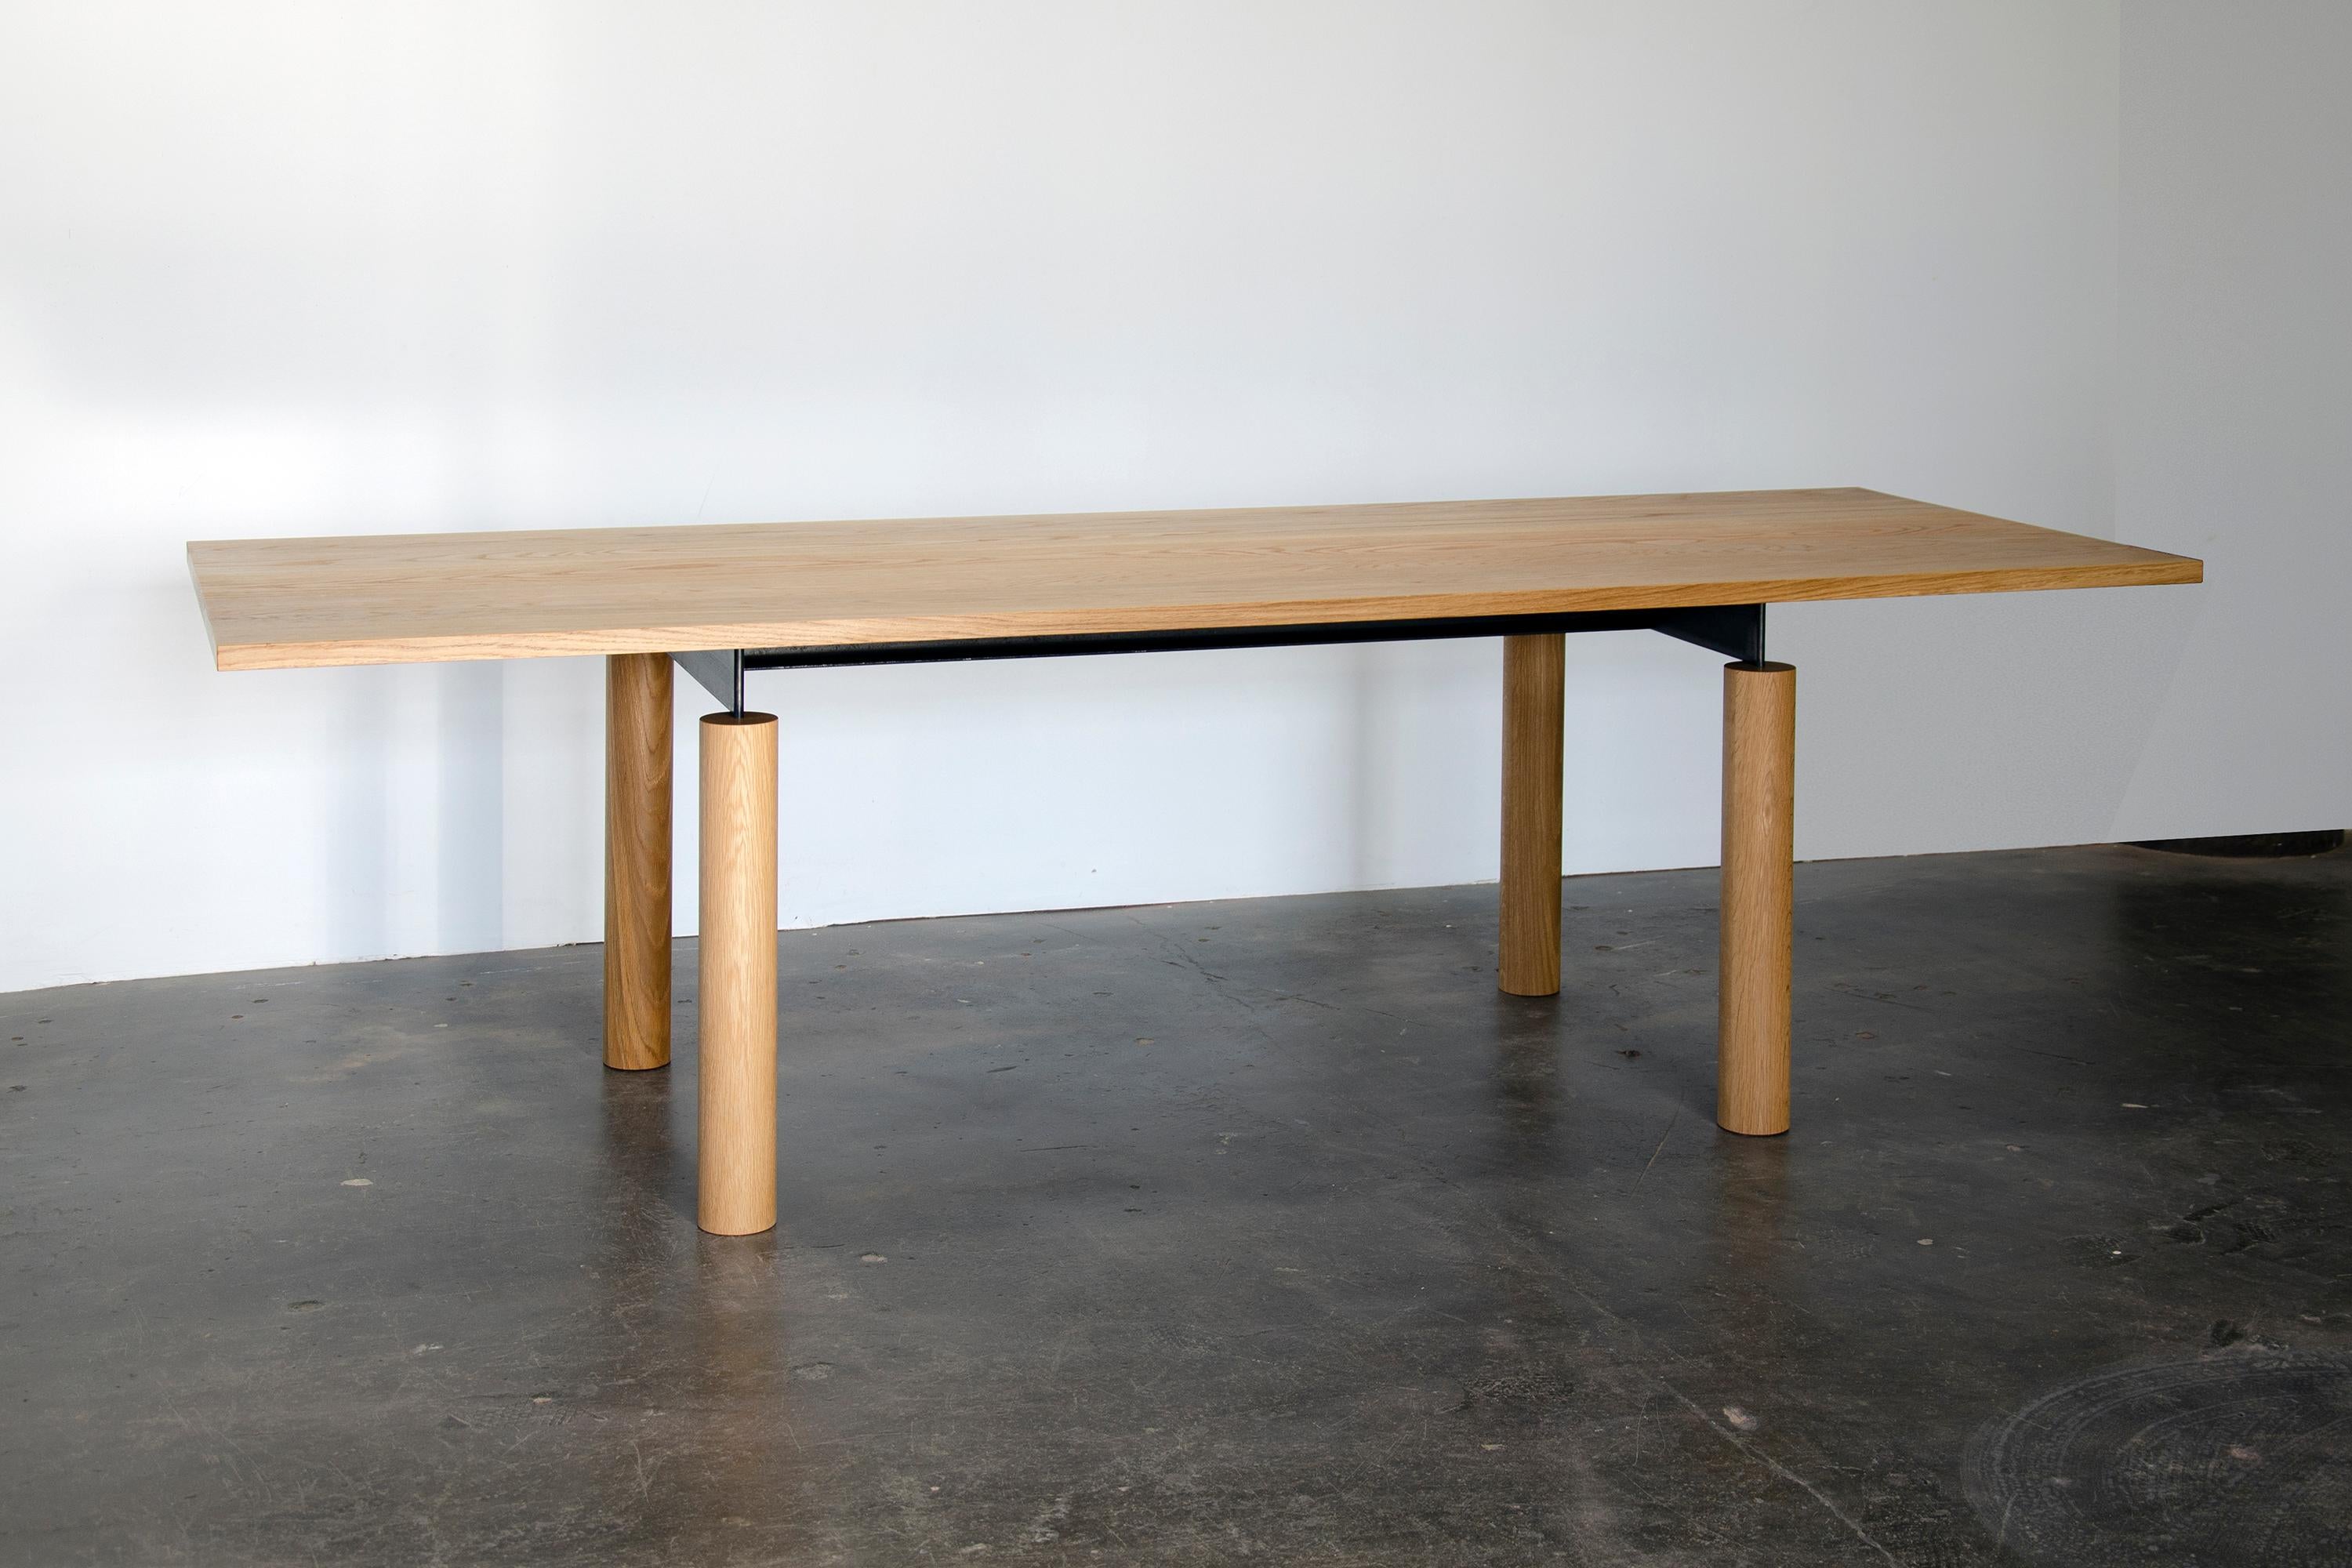 Overpass est une table contemporaine inspirée par les formes simples et la construction robuste des échangeurs d'autoroutes. Soulignant la beauté naturelle du bois massif, un châssis en acier noirci relie gracieusement un plateau épais à des pieds